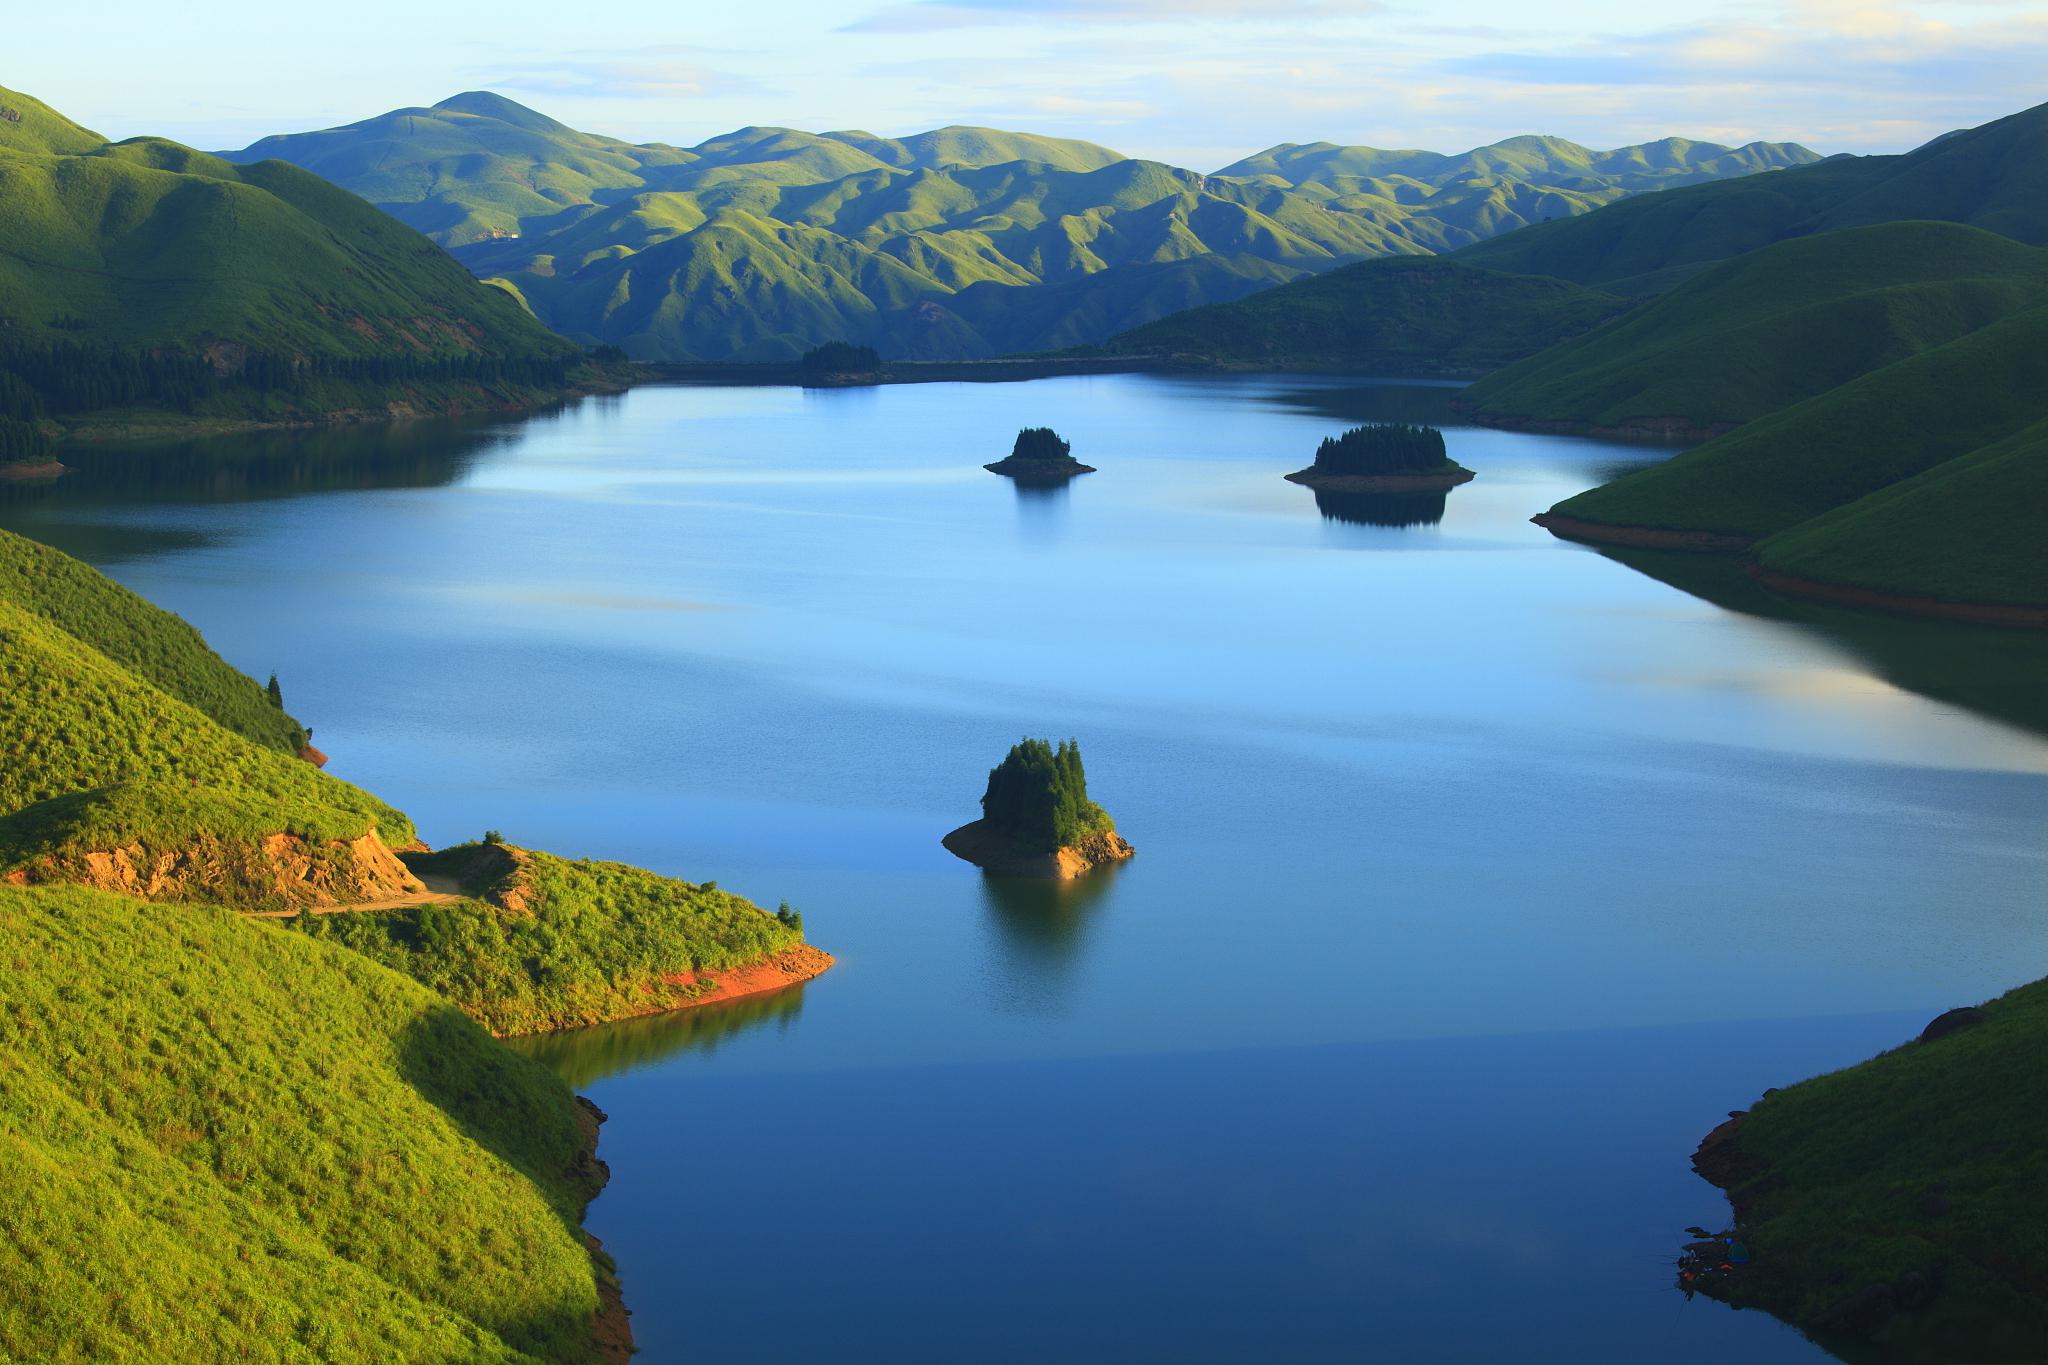 白山湖风景区:纯自然风光与美食的完美结合 在中国的东北部,坐落着一